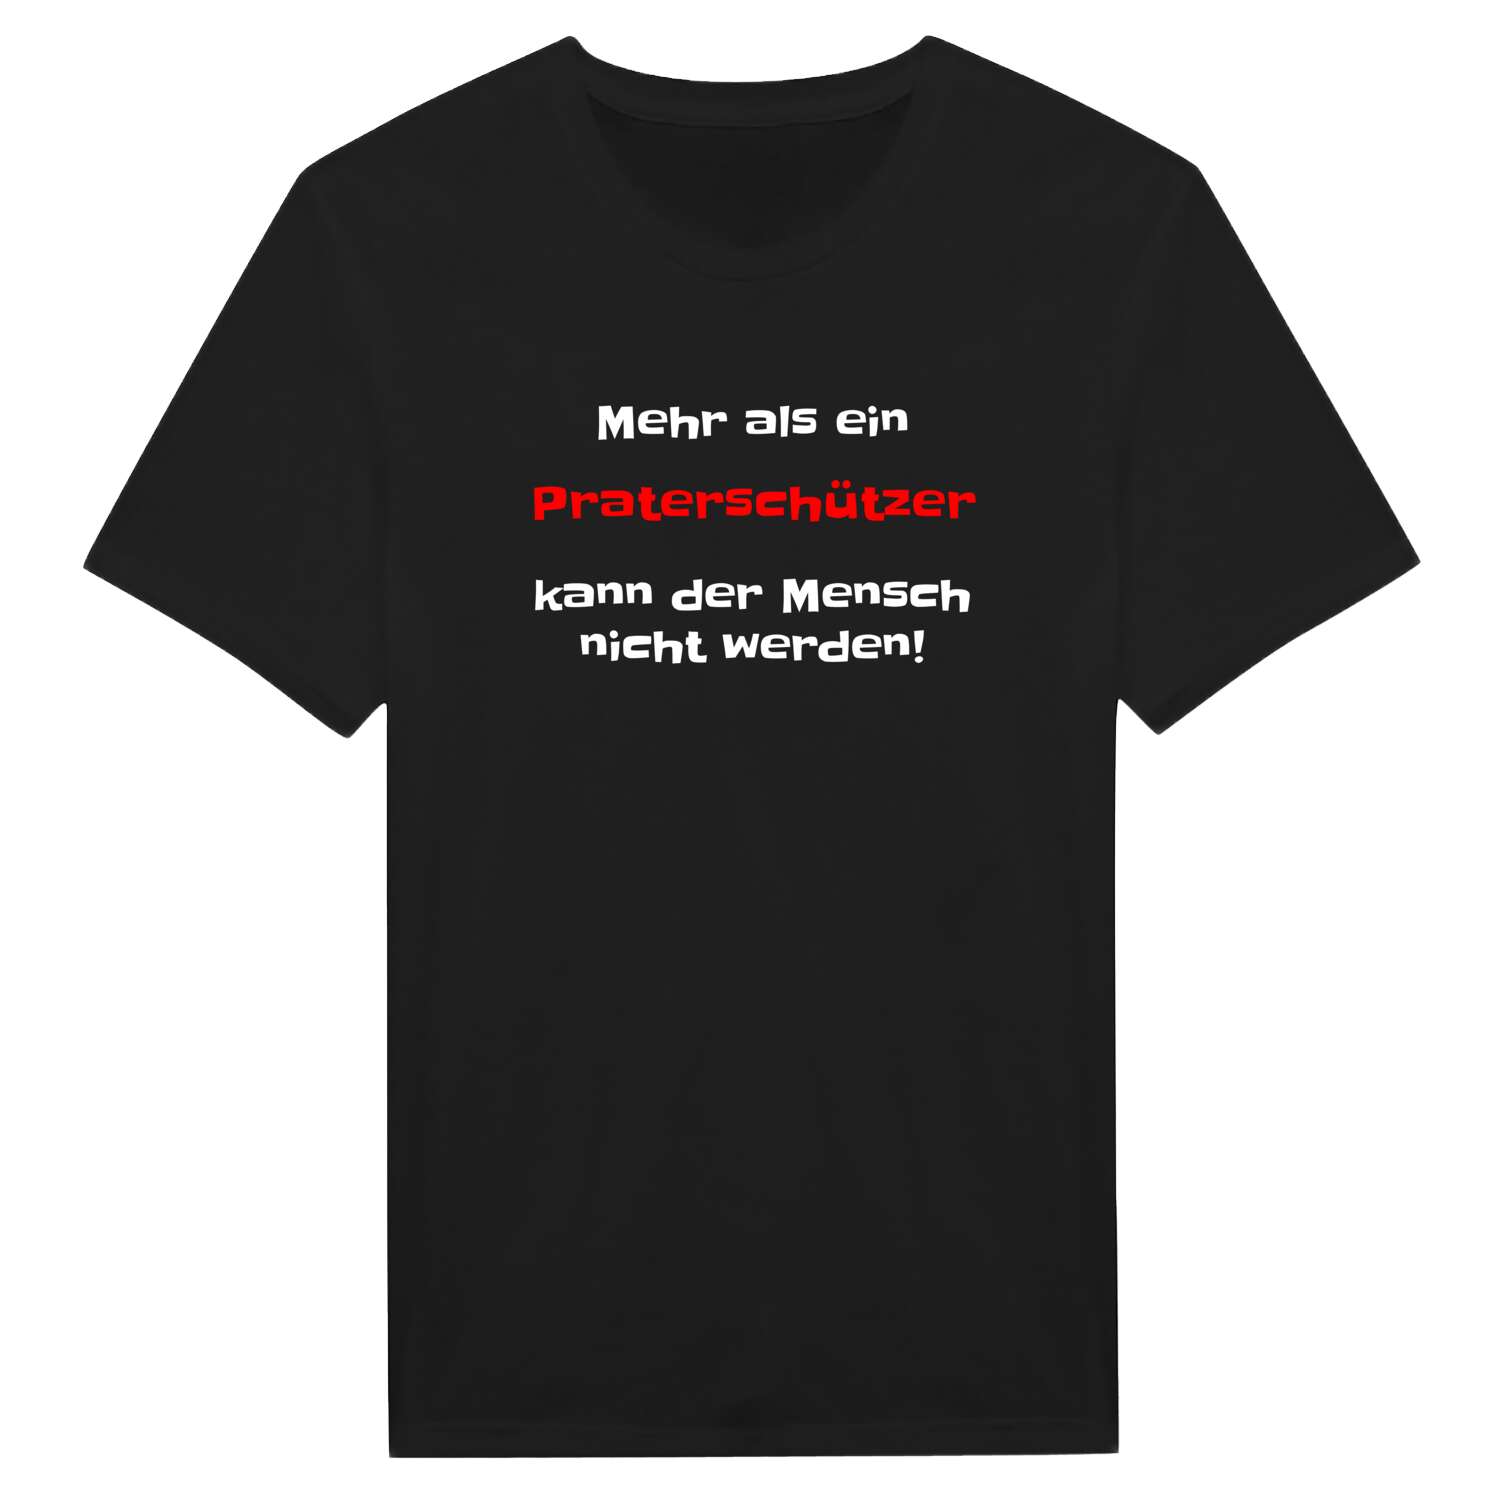 Praterschütz T-Shirt »Mehr als ein«